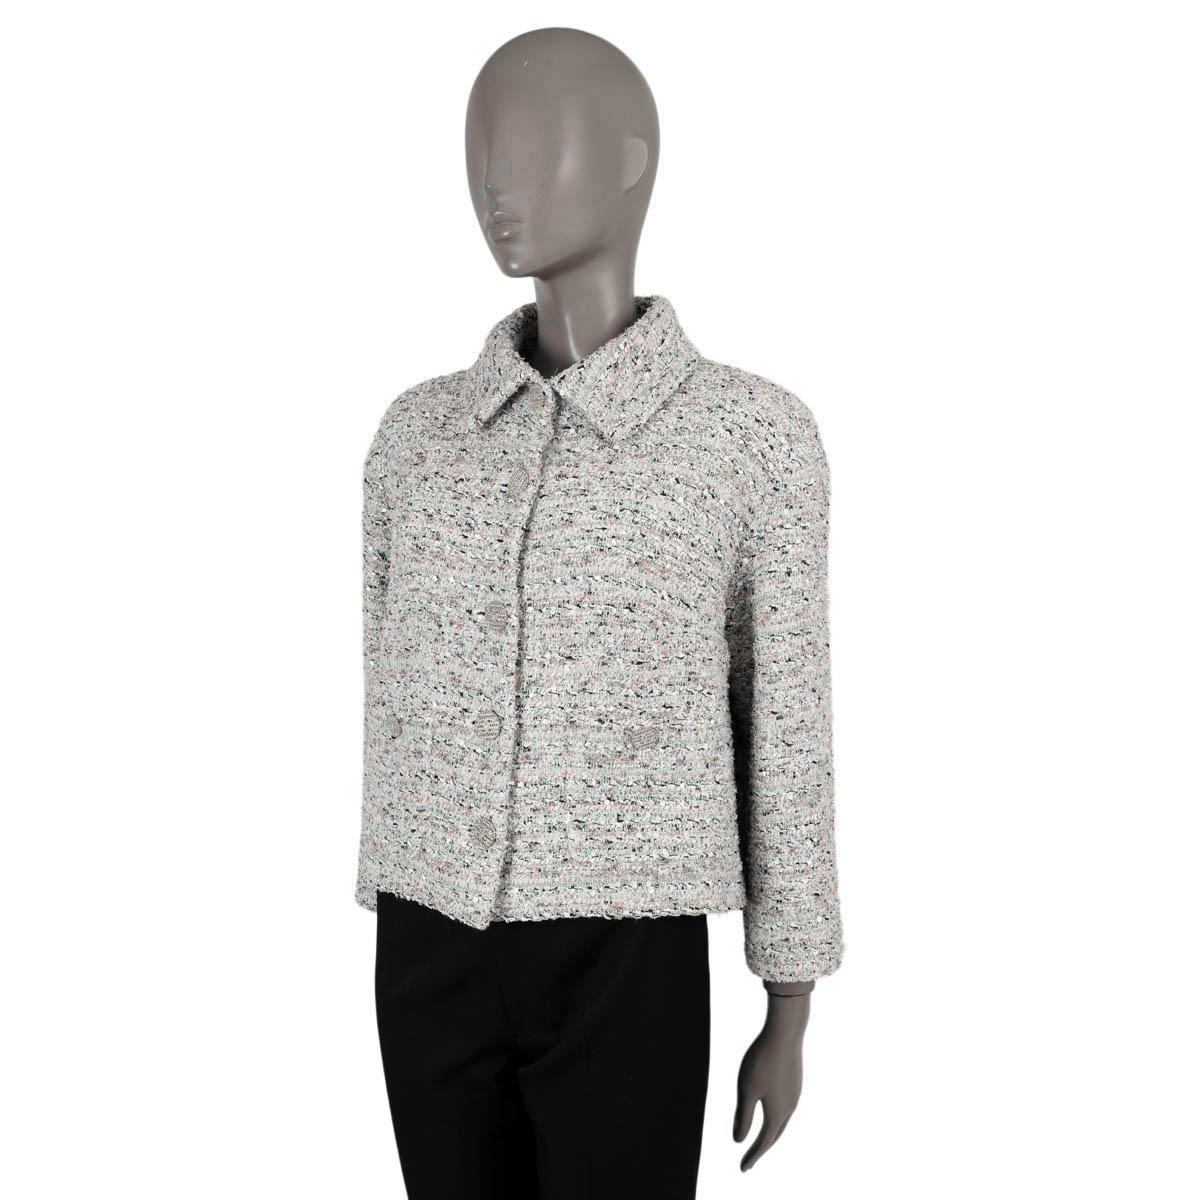 Veste en tweed à paillettes boxy 100% authentique CChanel en blanc, turquoise, rose pâle, lilas et noir : coton (49%), polyamide (20%), polyester (18%), acétate (6%), acrylique (6%) et viscose (1%). Coupe droite avec deux poches boutonnées à la